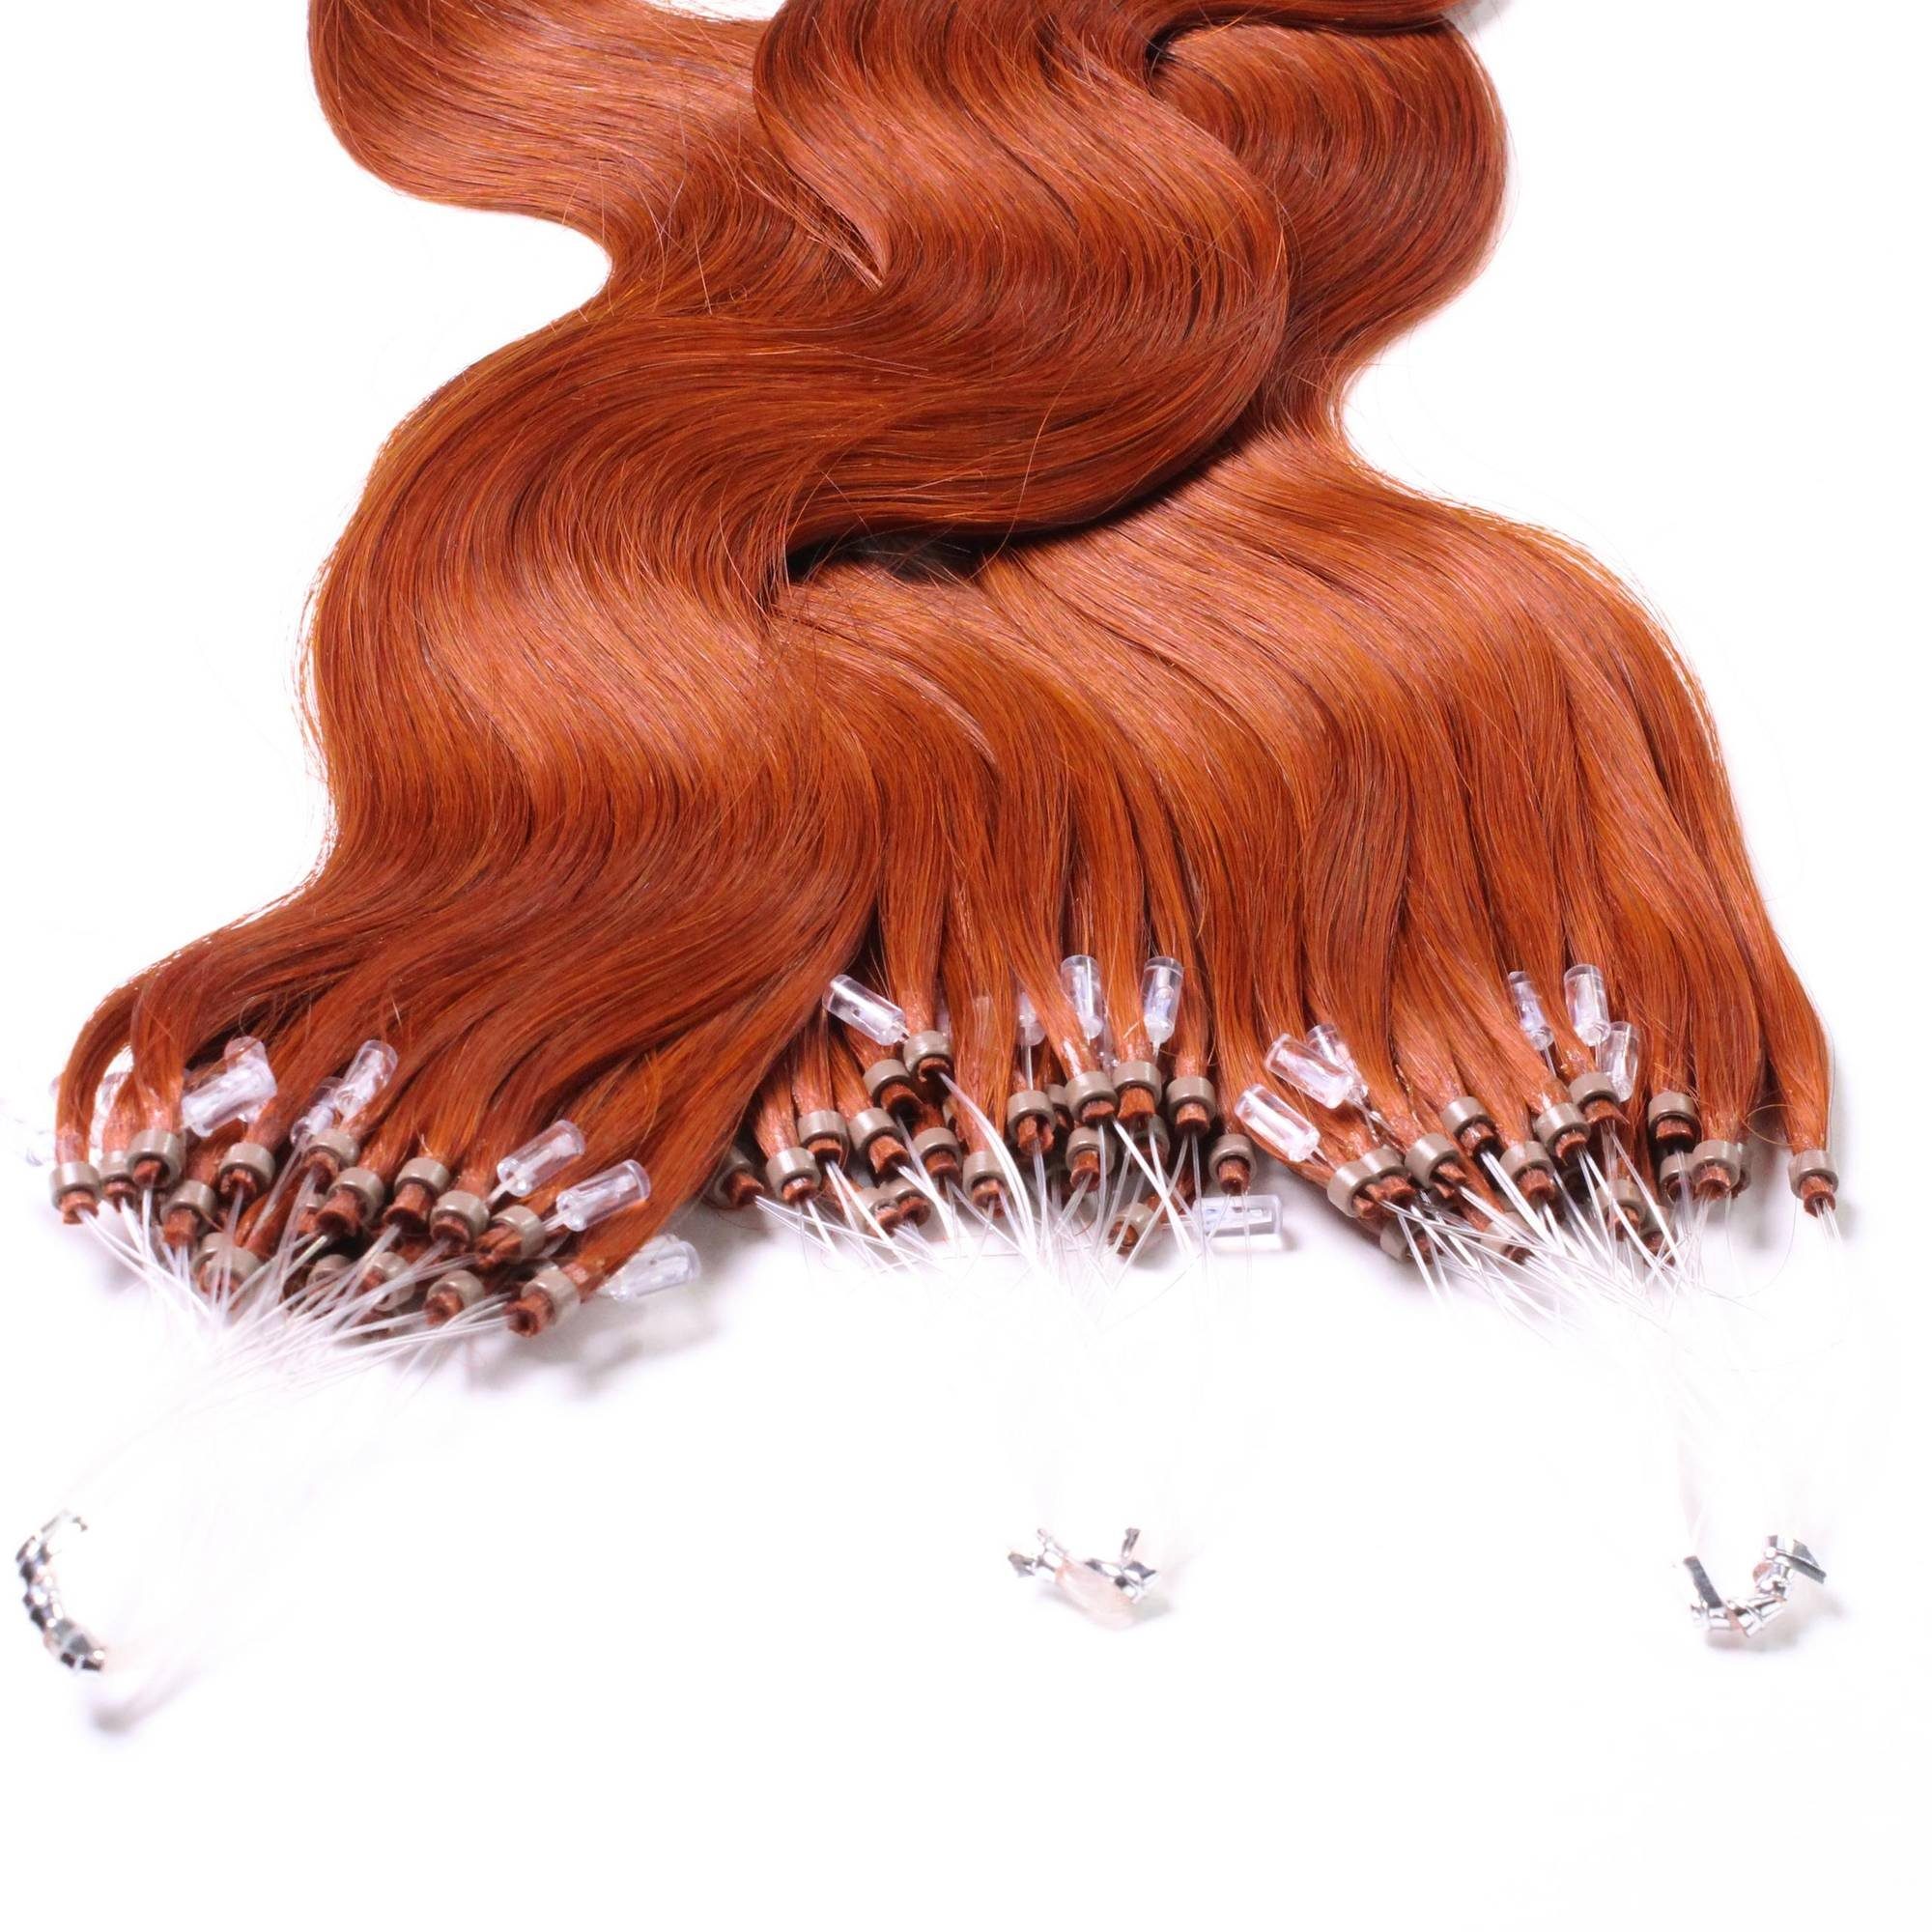 Echthaar-Extension - 0.5g Rot-Gold #8/43 hair2heart gewellt 40cm Microring Loops Hellblond